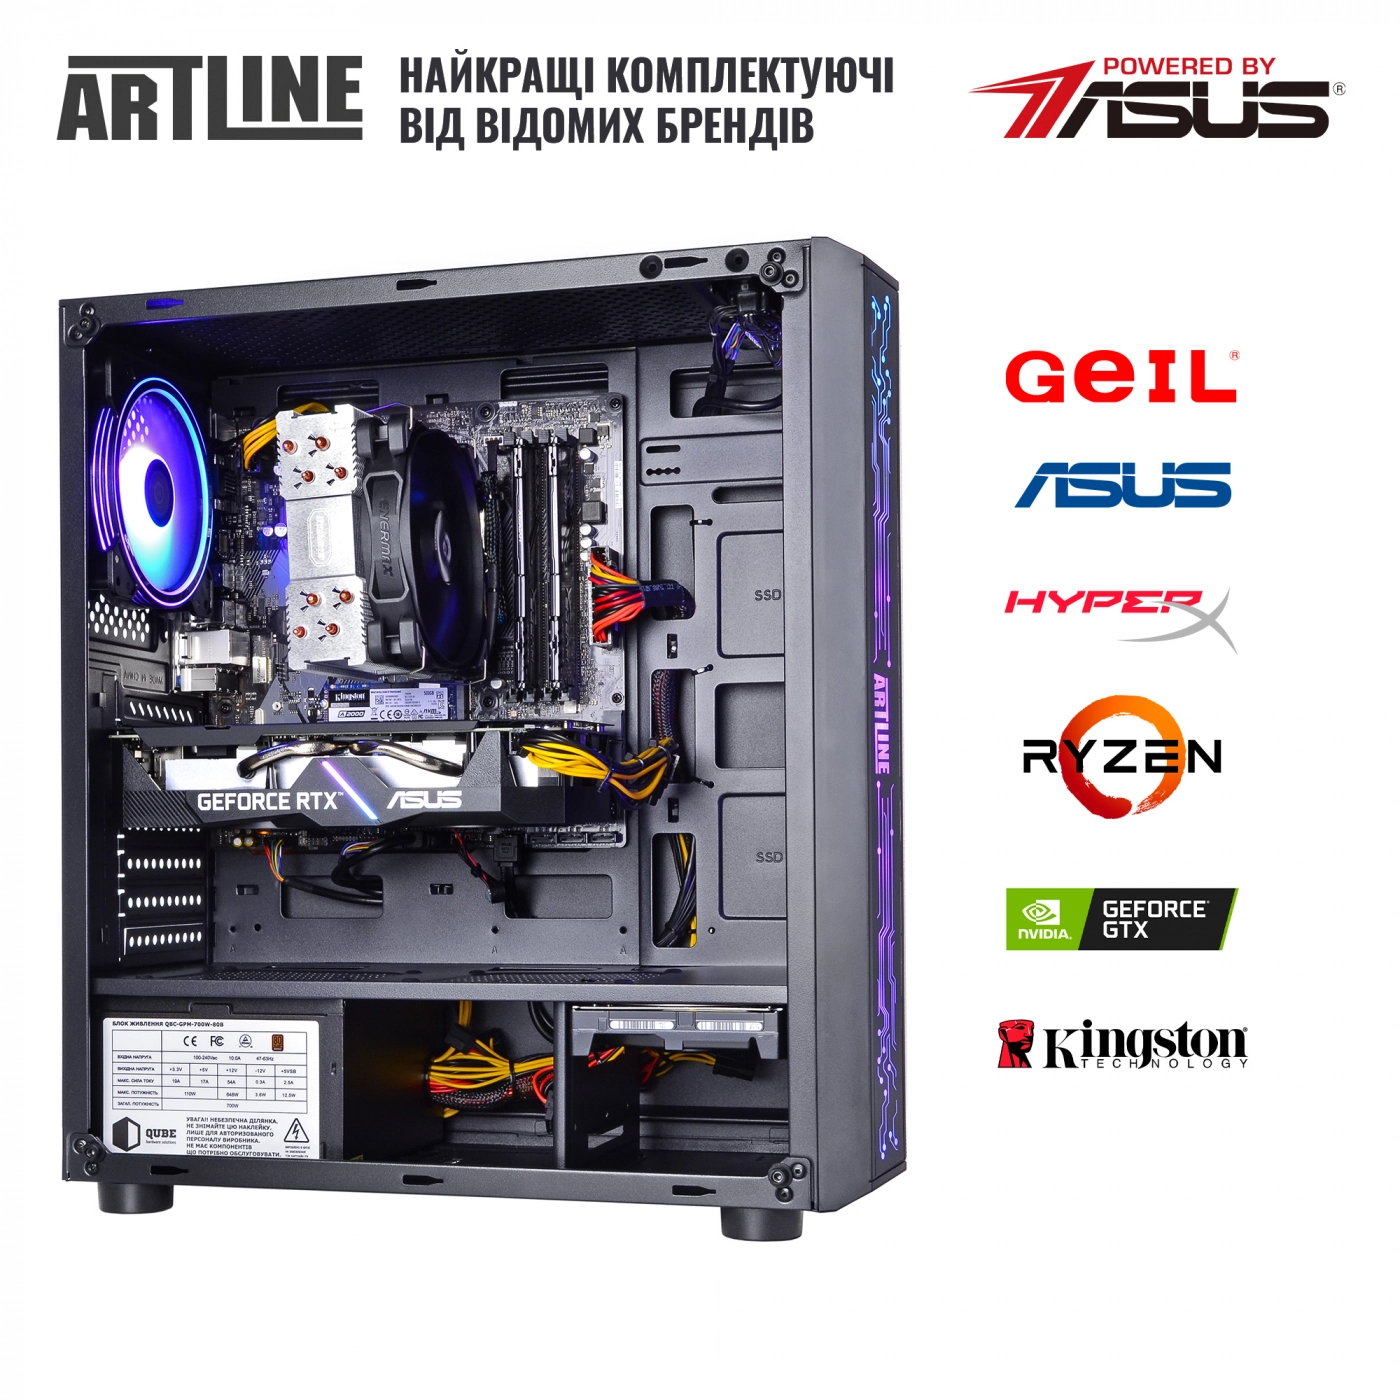 Купить Компьютер ARTLINE Gaming X68v16 - фото 7